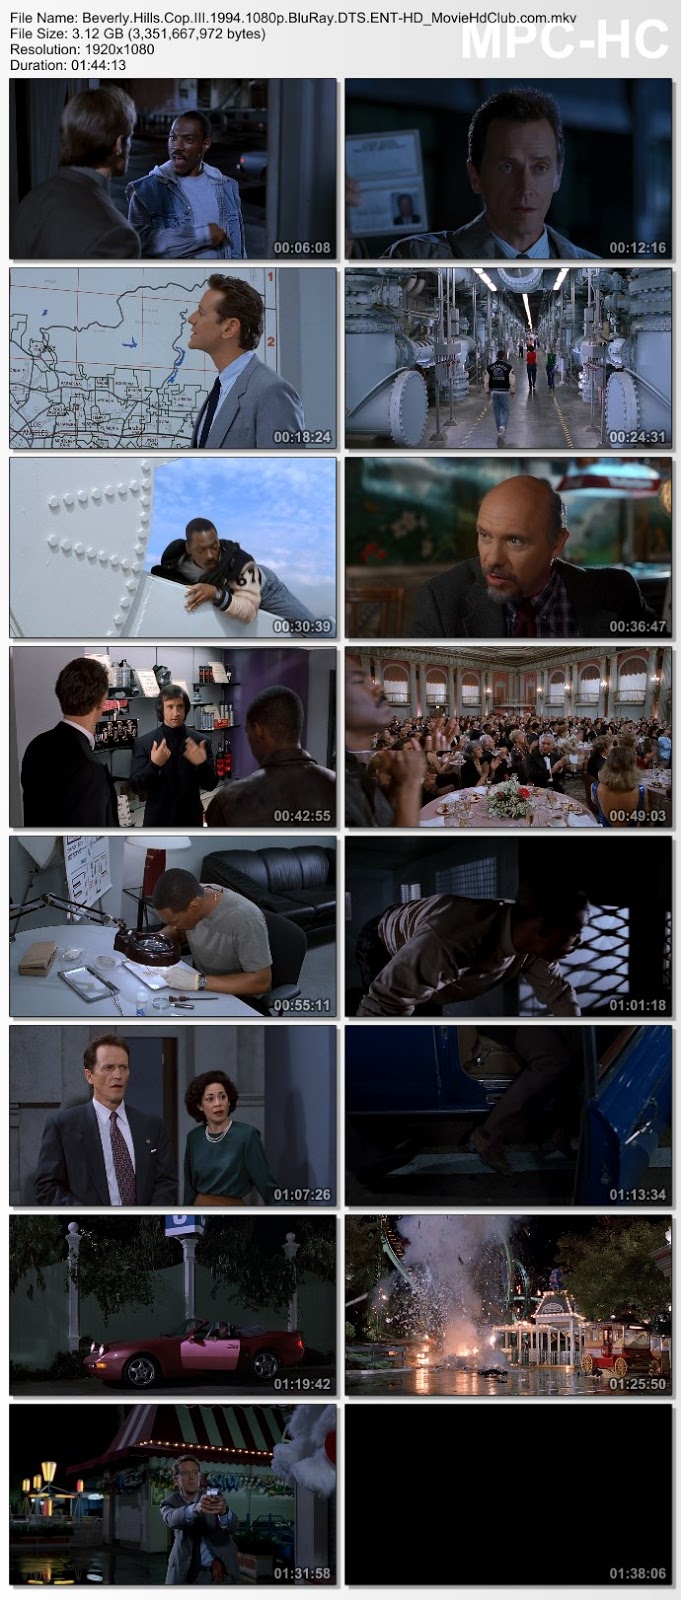 [Mini-HD][Boxset] Beverly Hills Cop Collection (1984-1994) - โปลิศจับตำรวจ ภาค 1-3 [1080p][เสียง:ไทย 5.1/Eng DTS][ซับ:ไทย/Eng][.MKV] BH3_MovieHdClub_SS